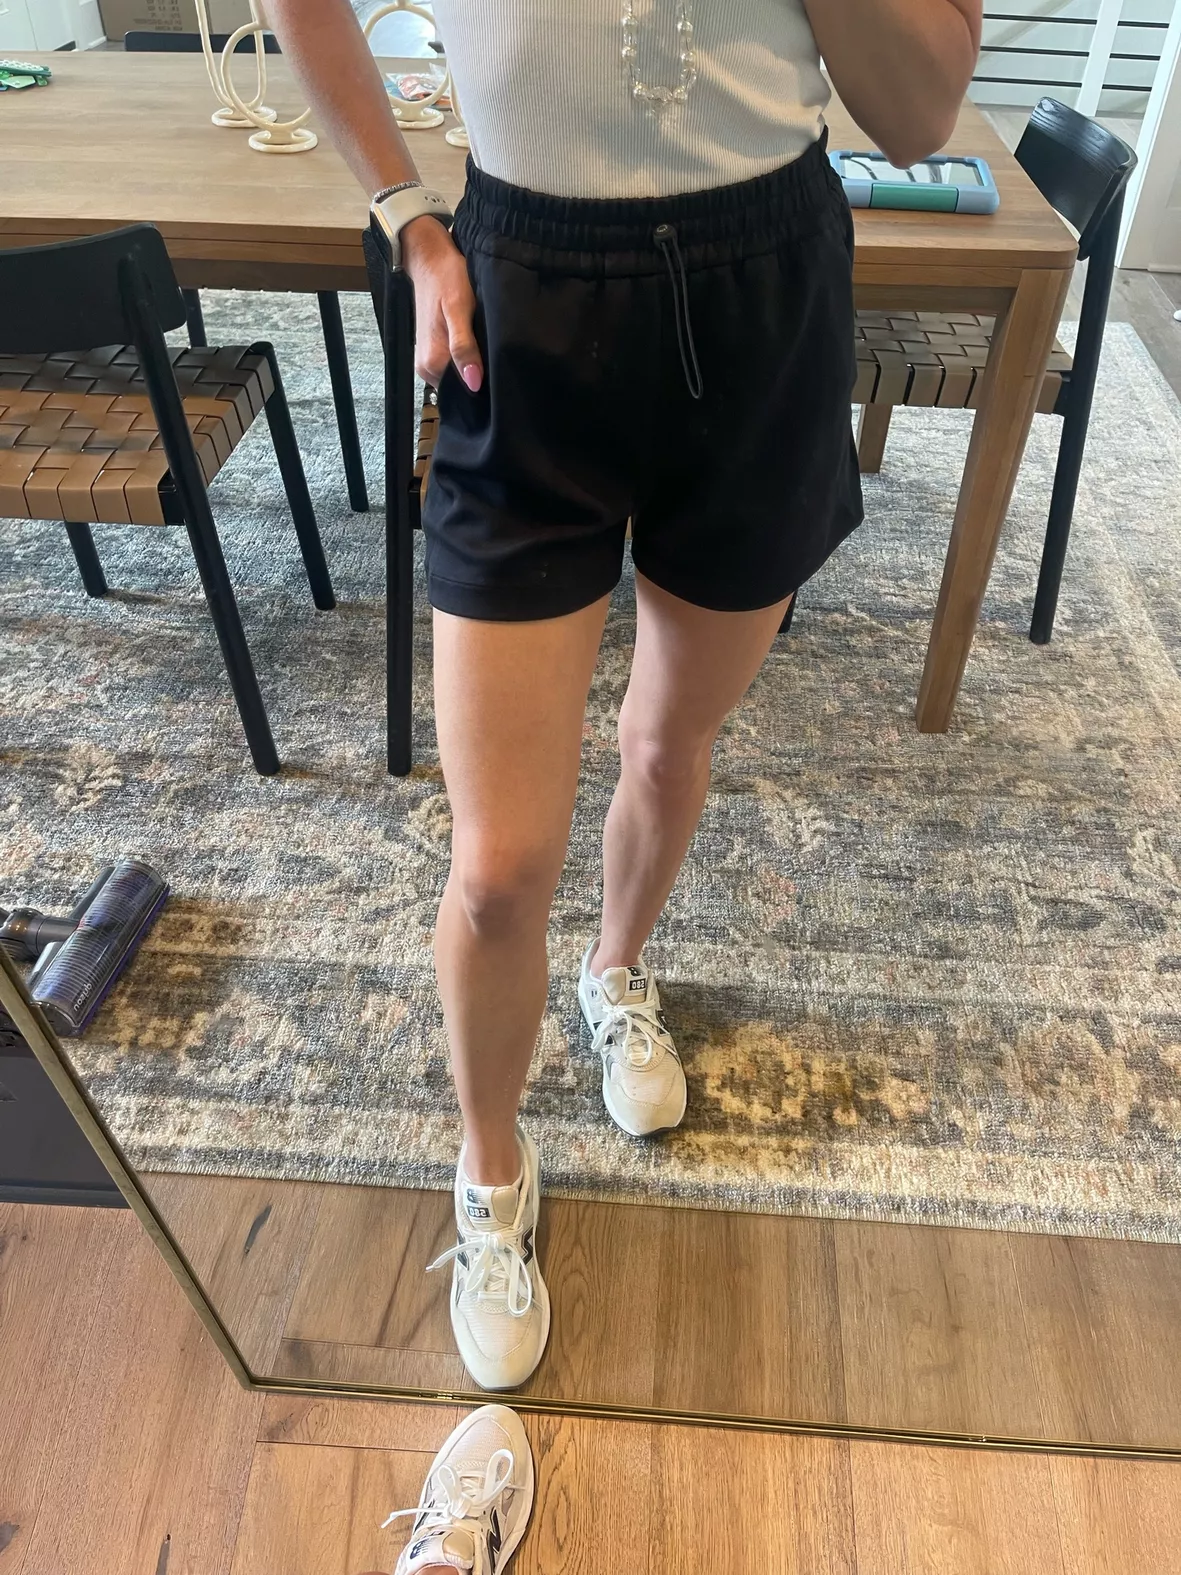 1:1 LULU LEMON Dupe Shorts … curated on LTK